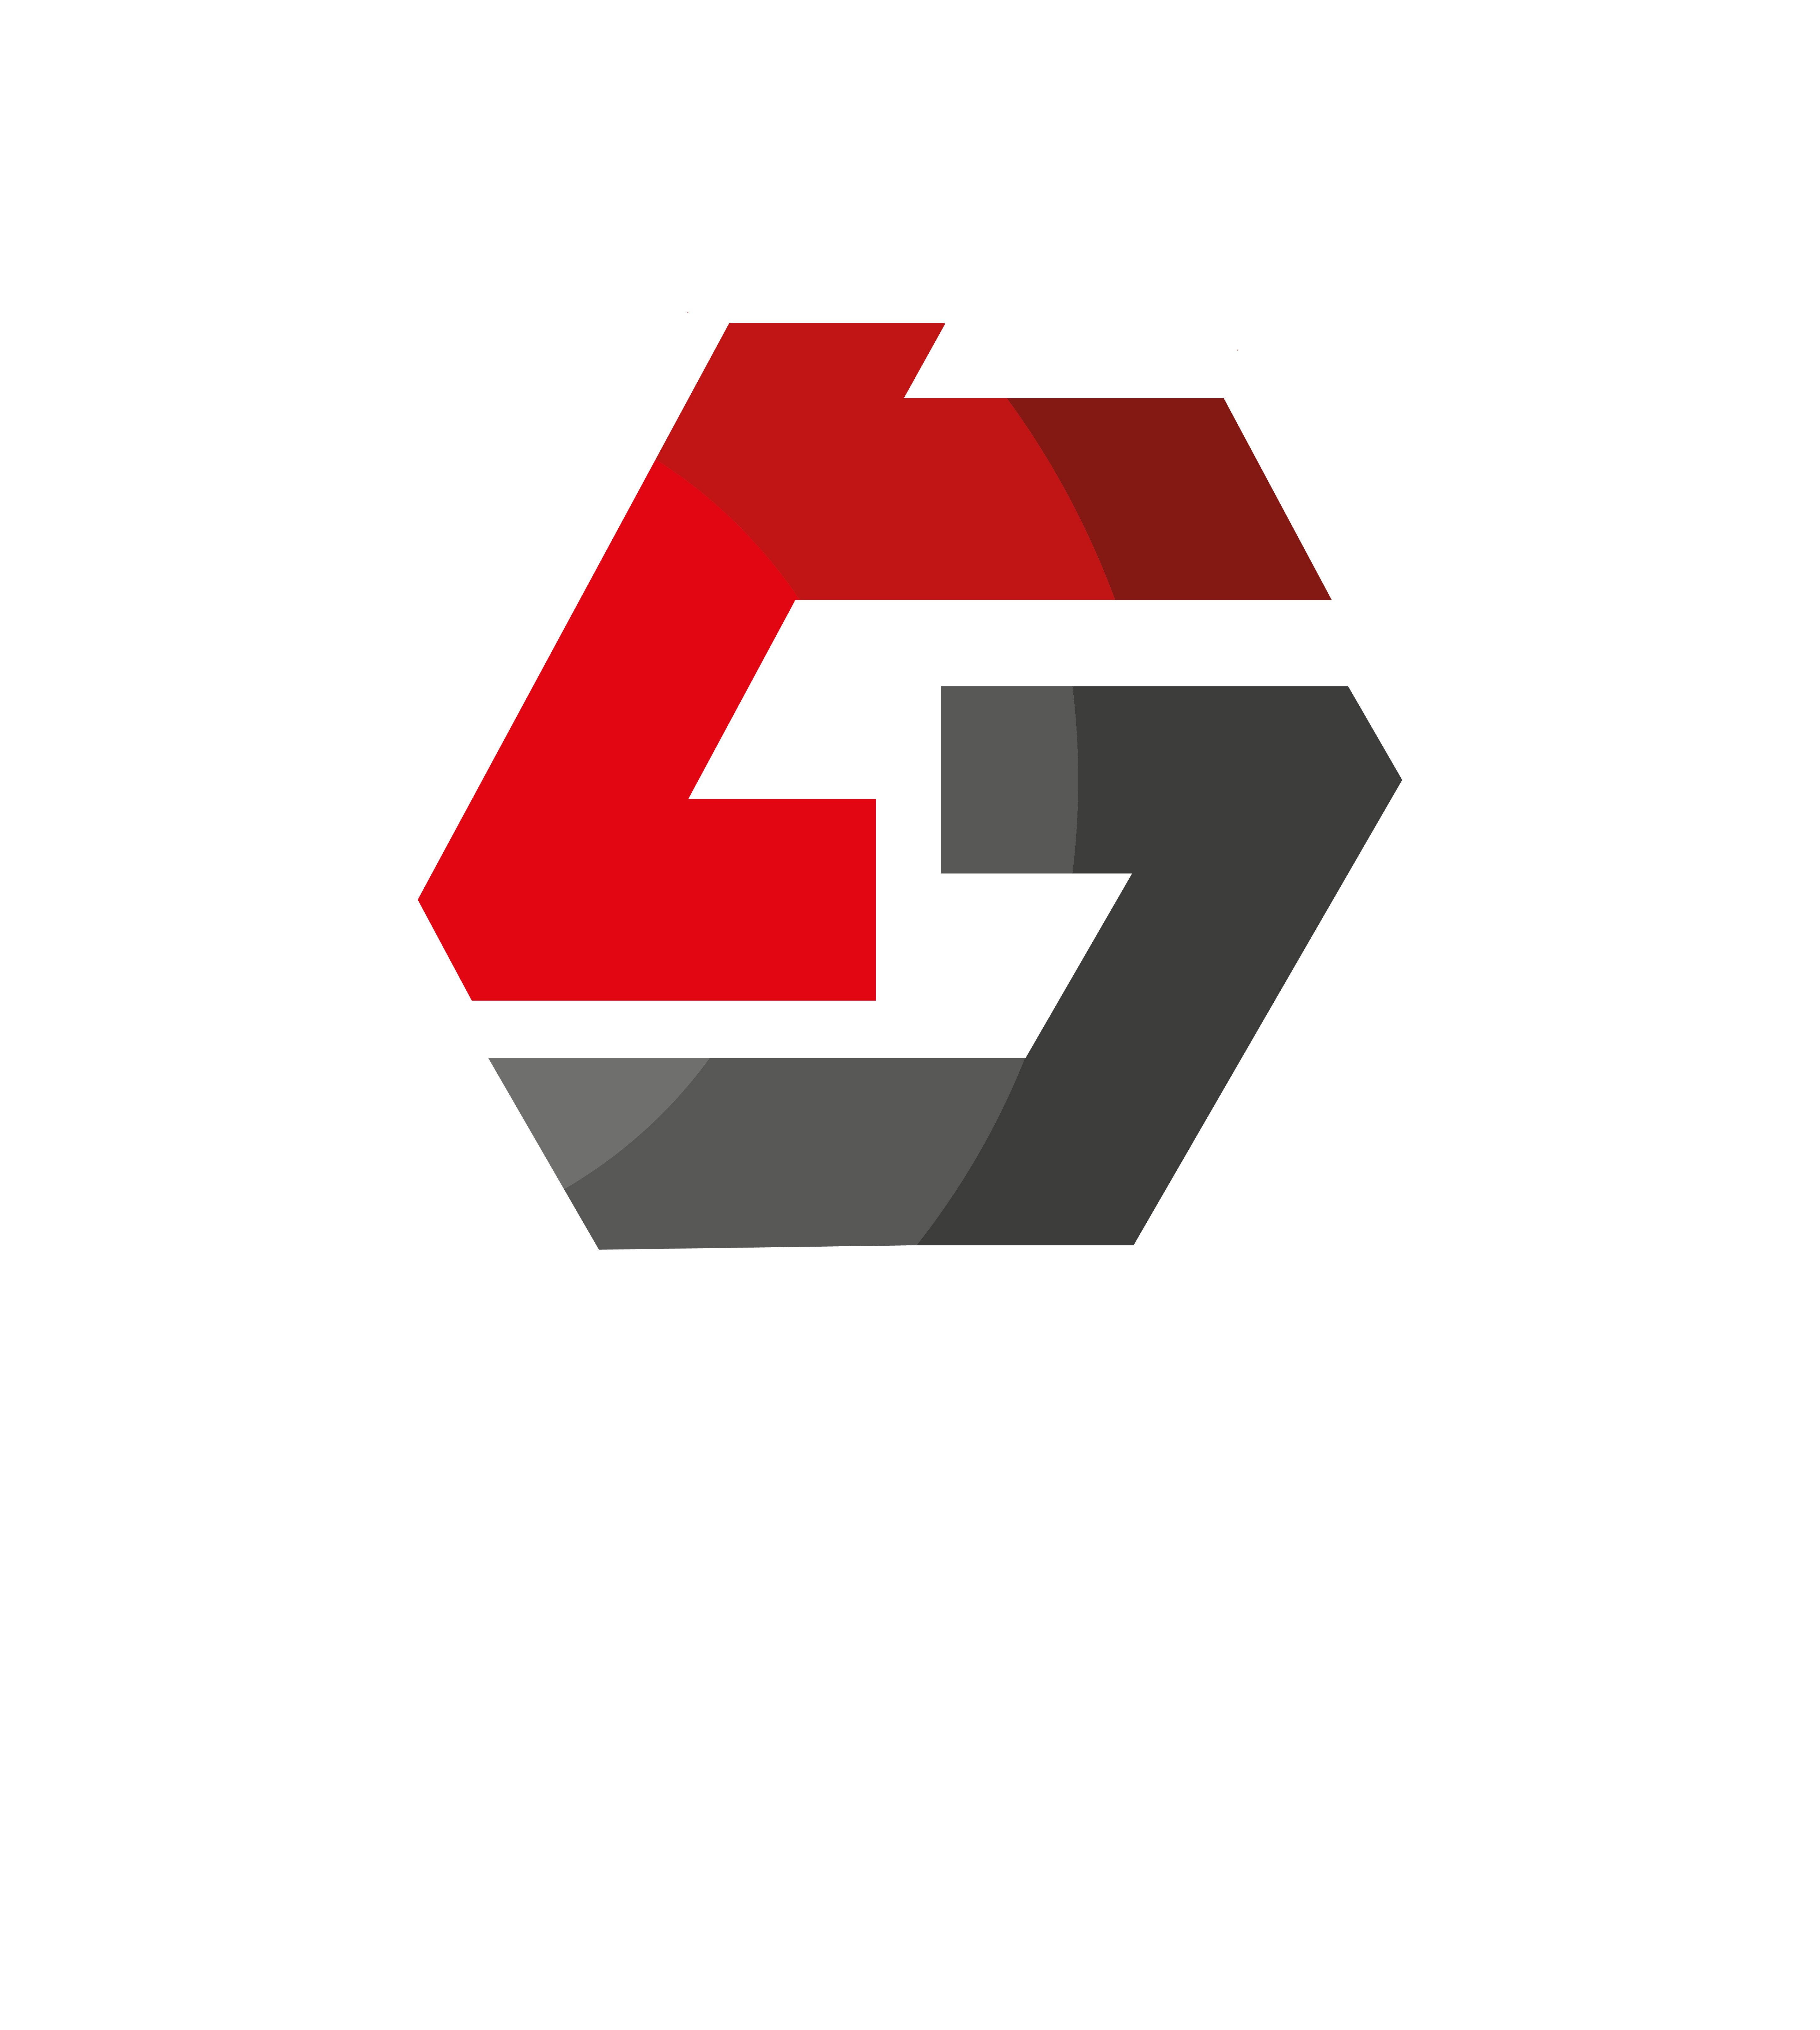 Gessy GmbH